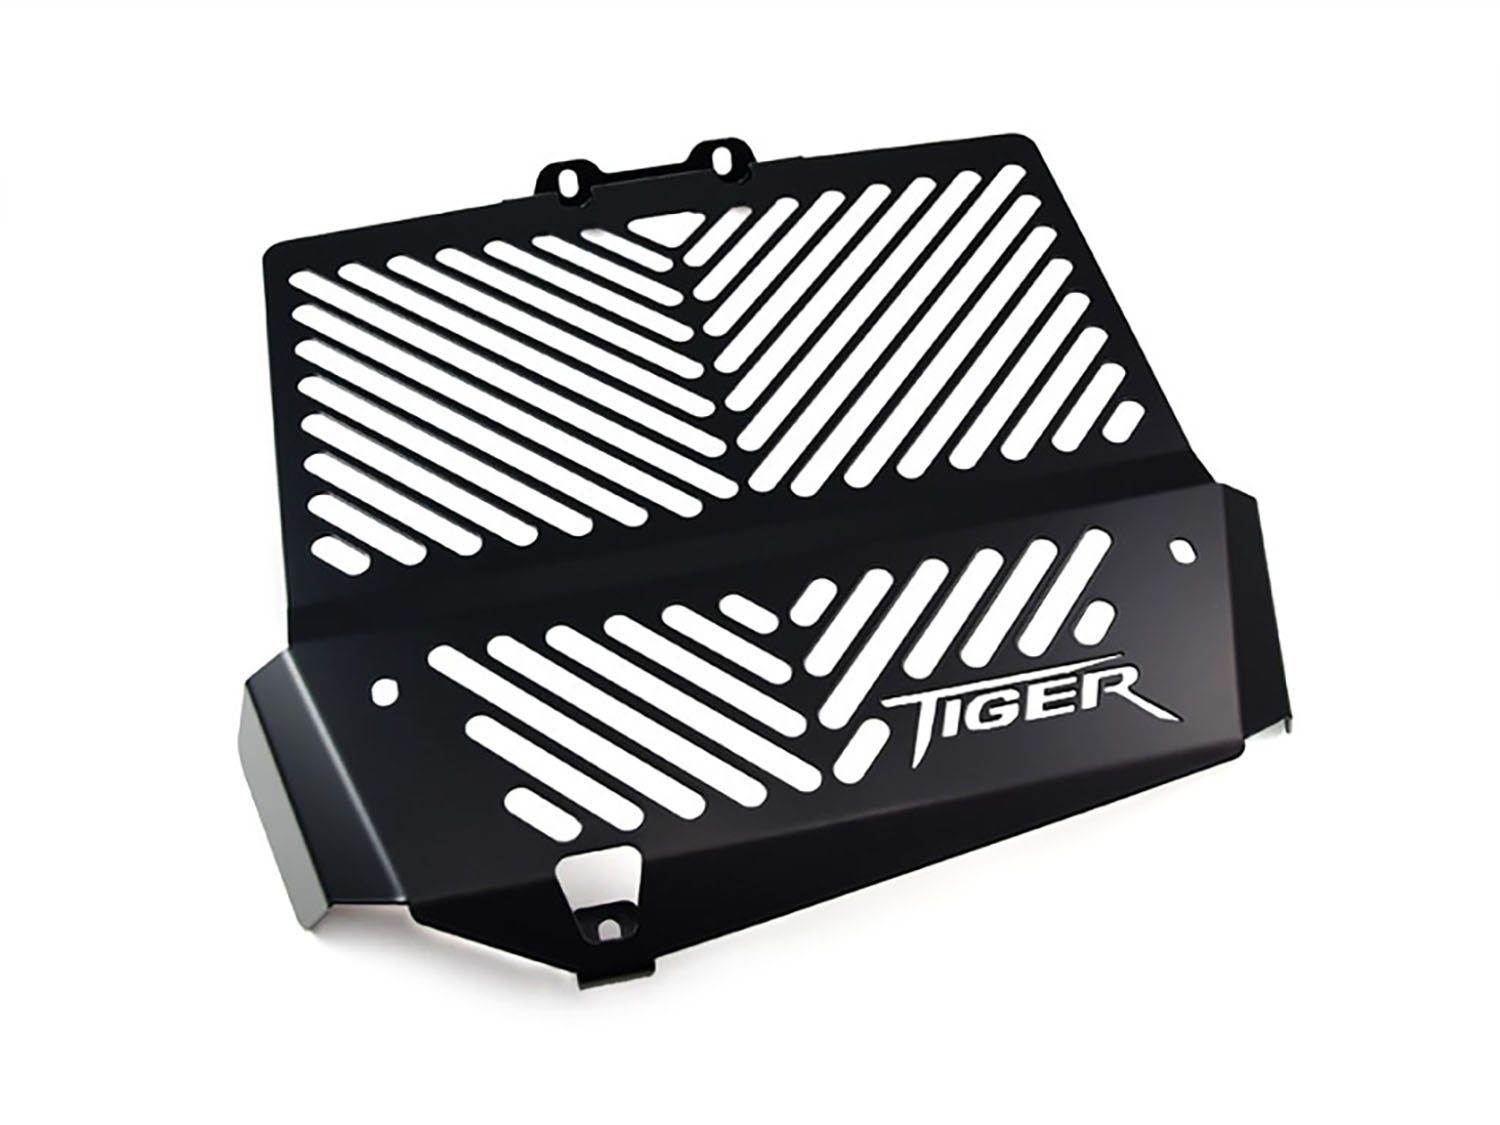 ZIEGER Motorrad-Additiv Kühlerabdeckung Tiger Motorradkühlerabdeckung schwarz, für Triumph Logo 1050